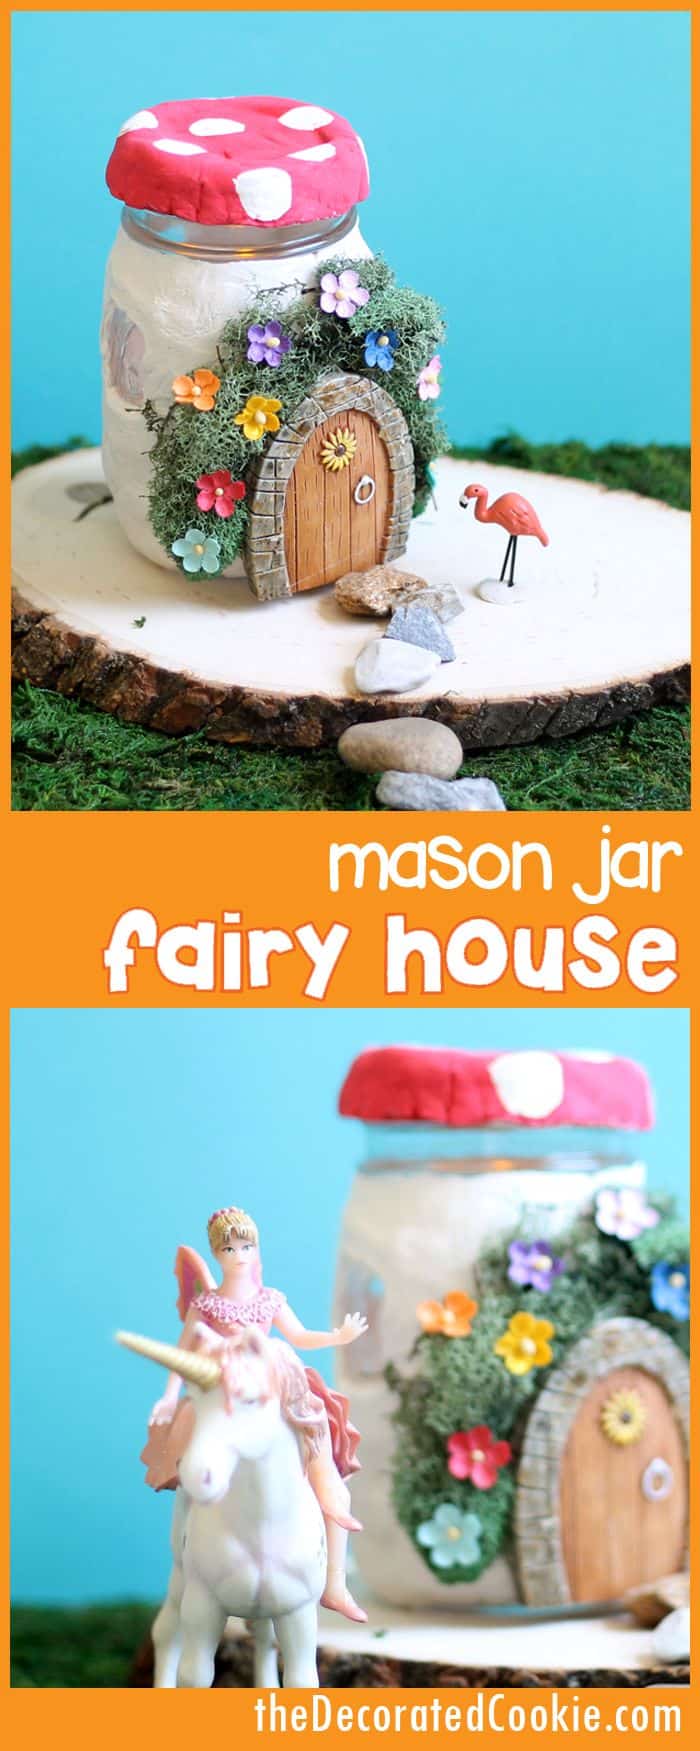 Mason jar fairy house